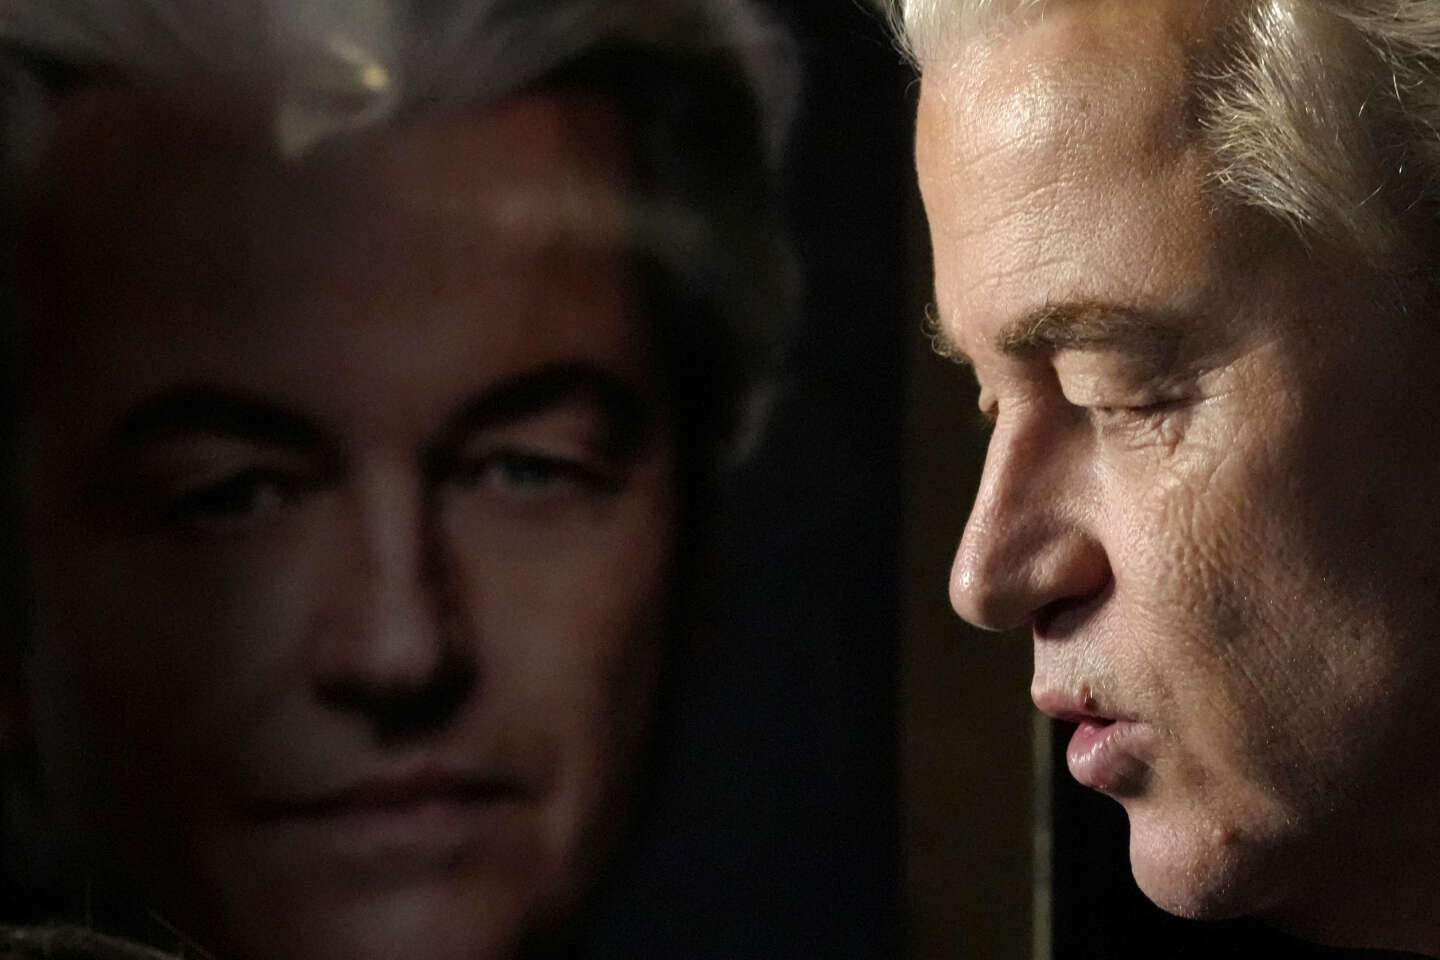 In Nederland krijgt populistische leider Wilders een onverwachte impuls van een rapport om de immigratie te beteugelen.